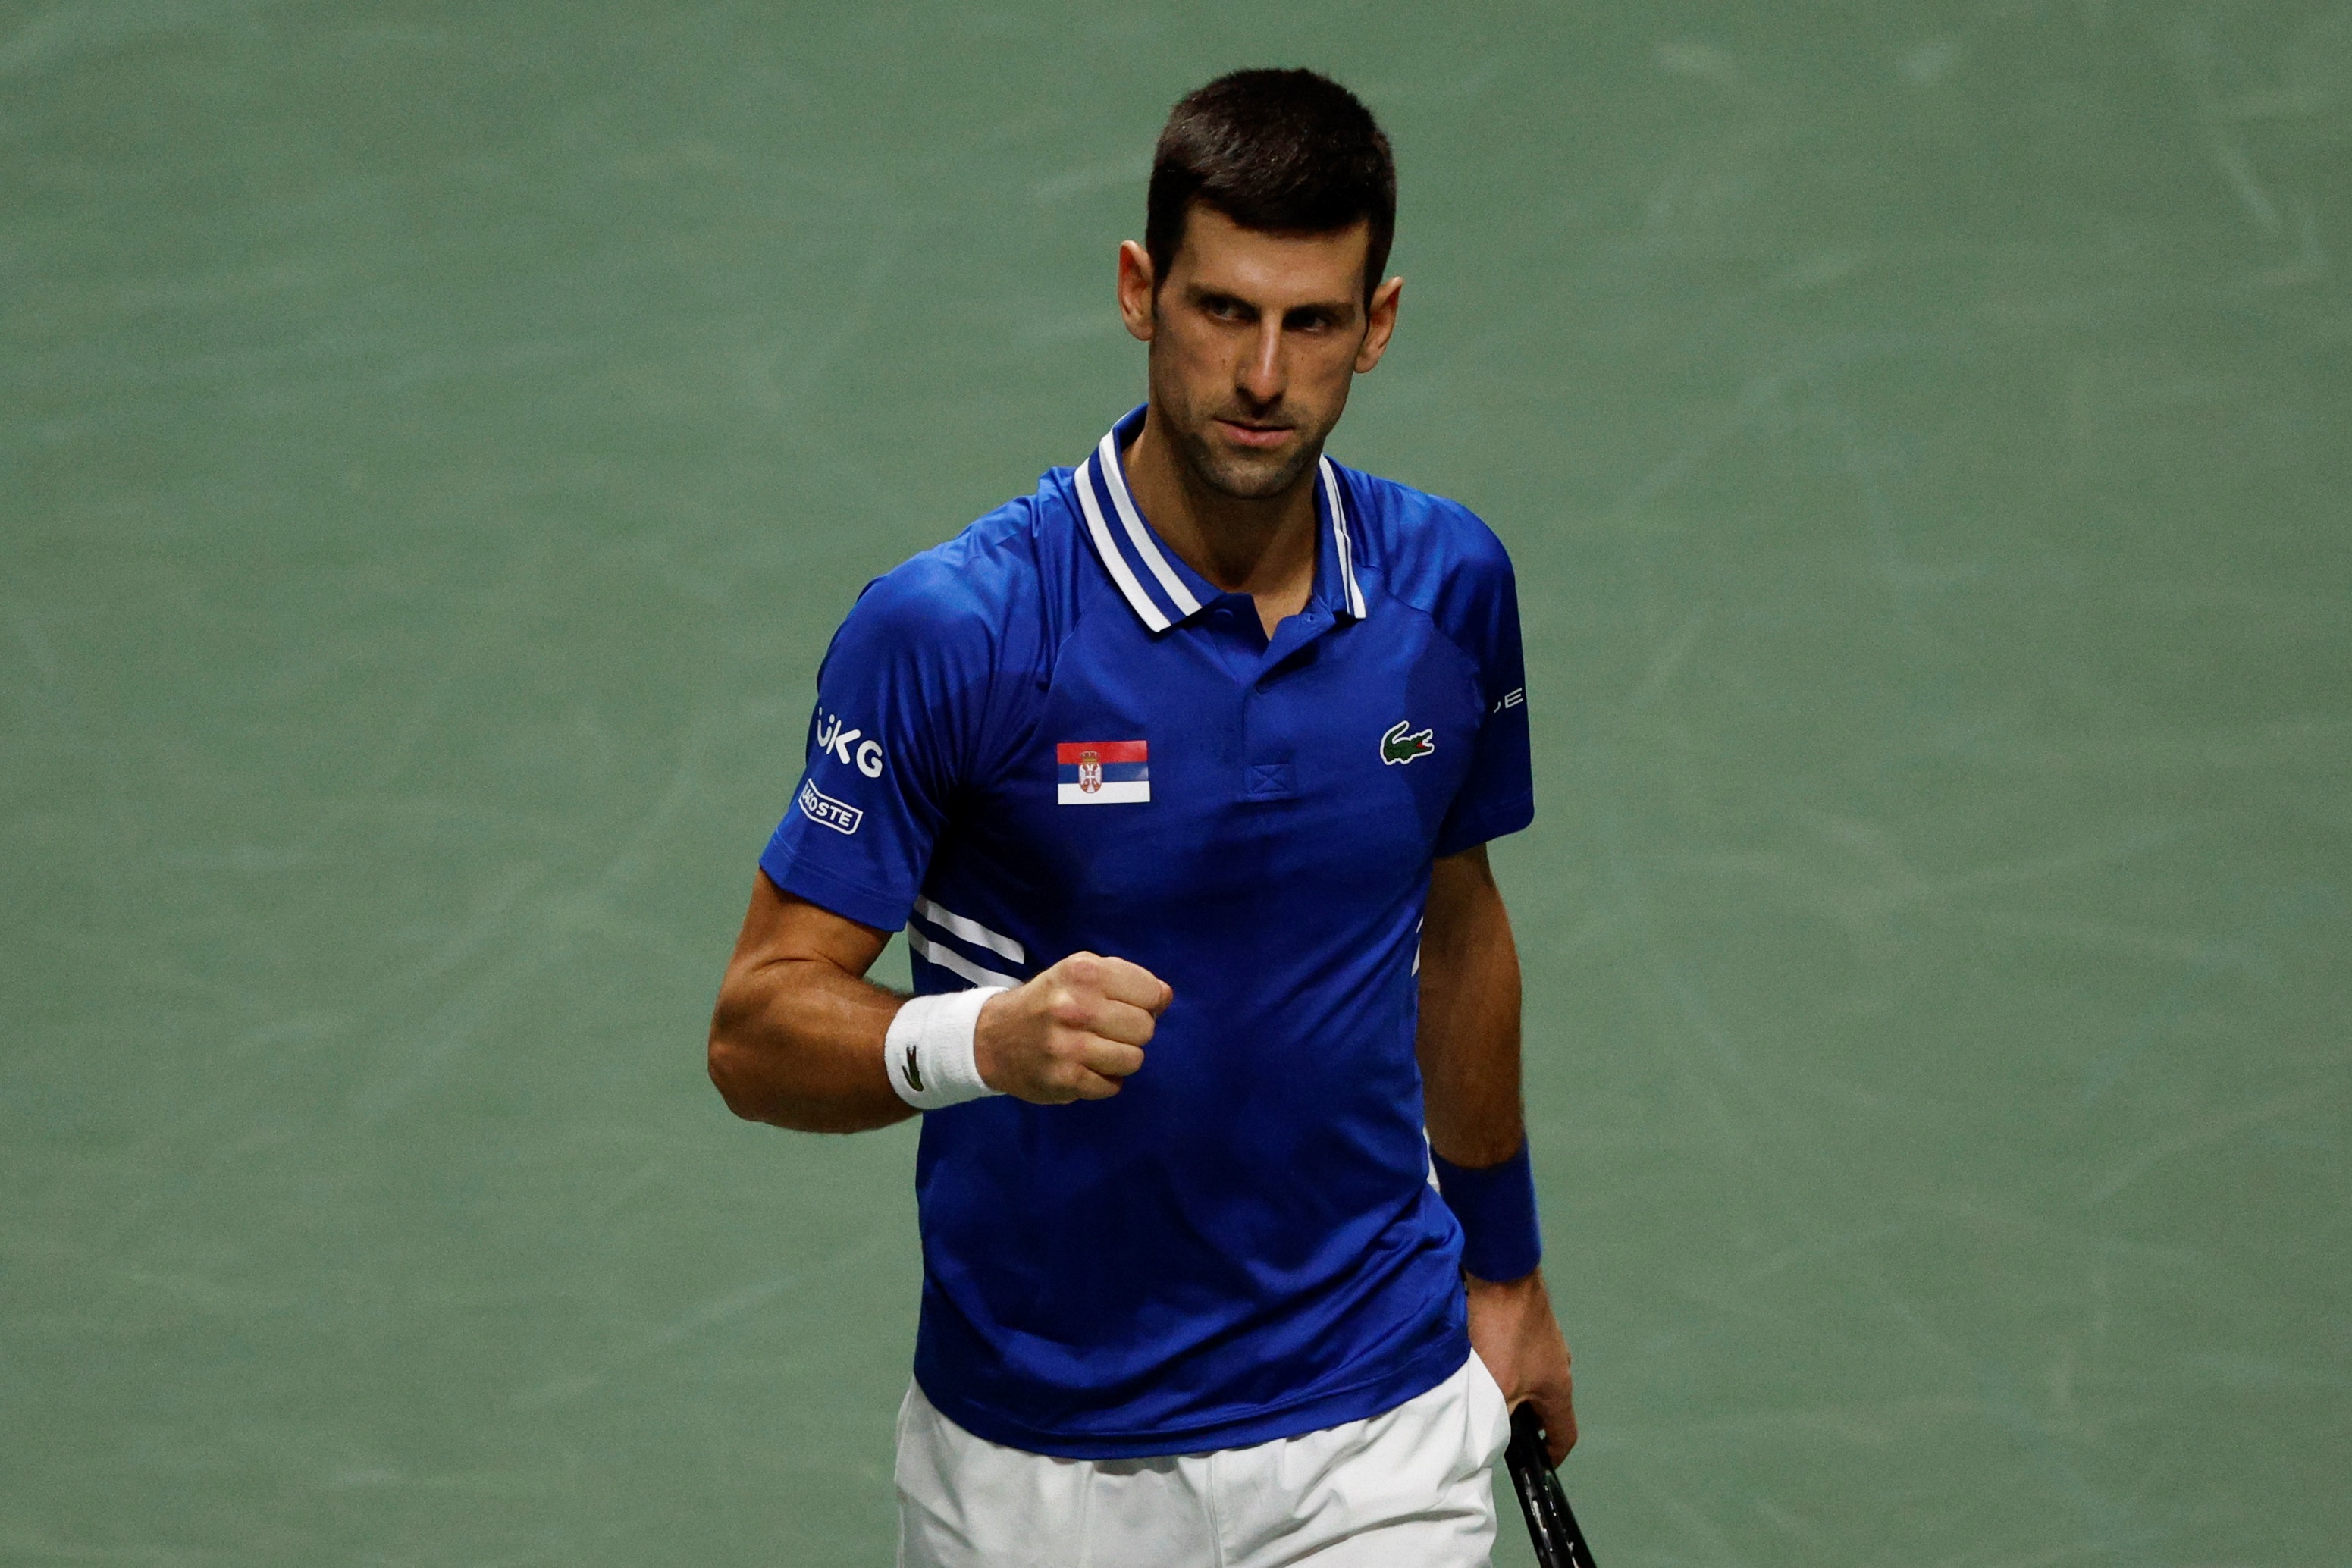 Djokovic participará en el Abierto de Australia tras recibir exención médica